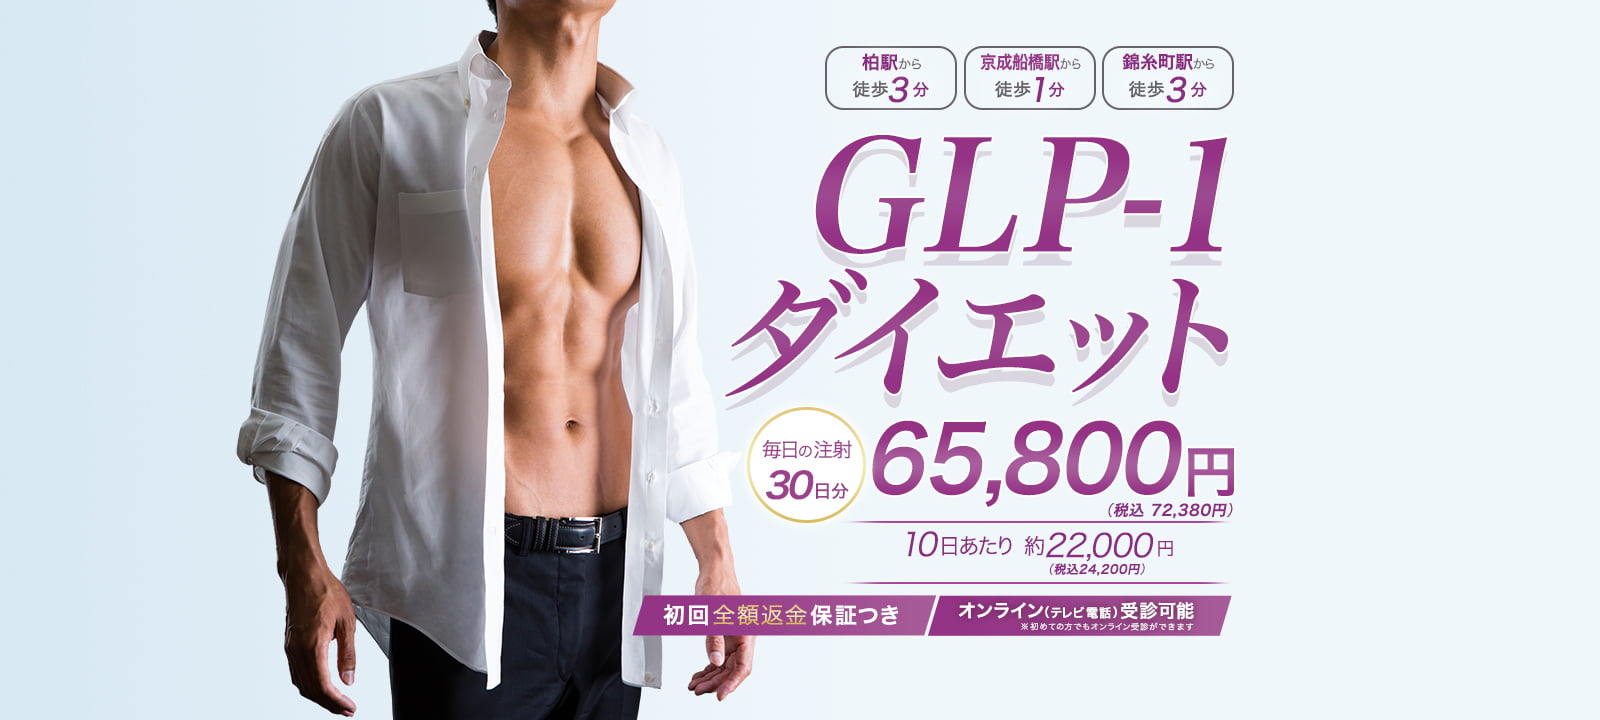 GLP-1ダイエット 30日分54,200円(税抜)